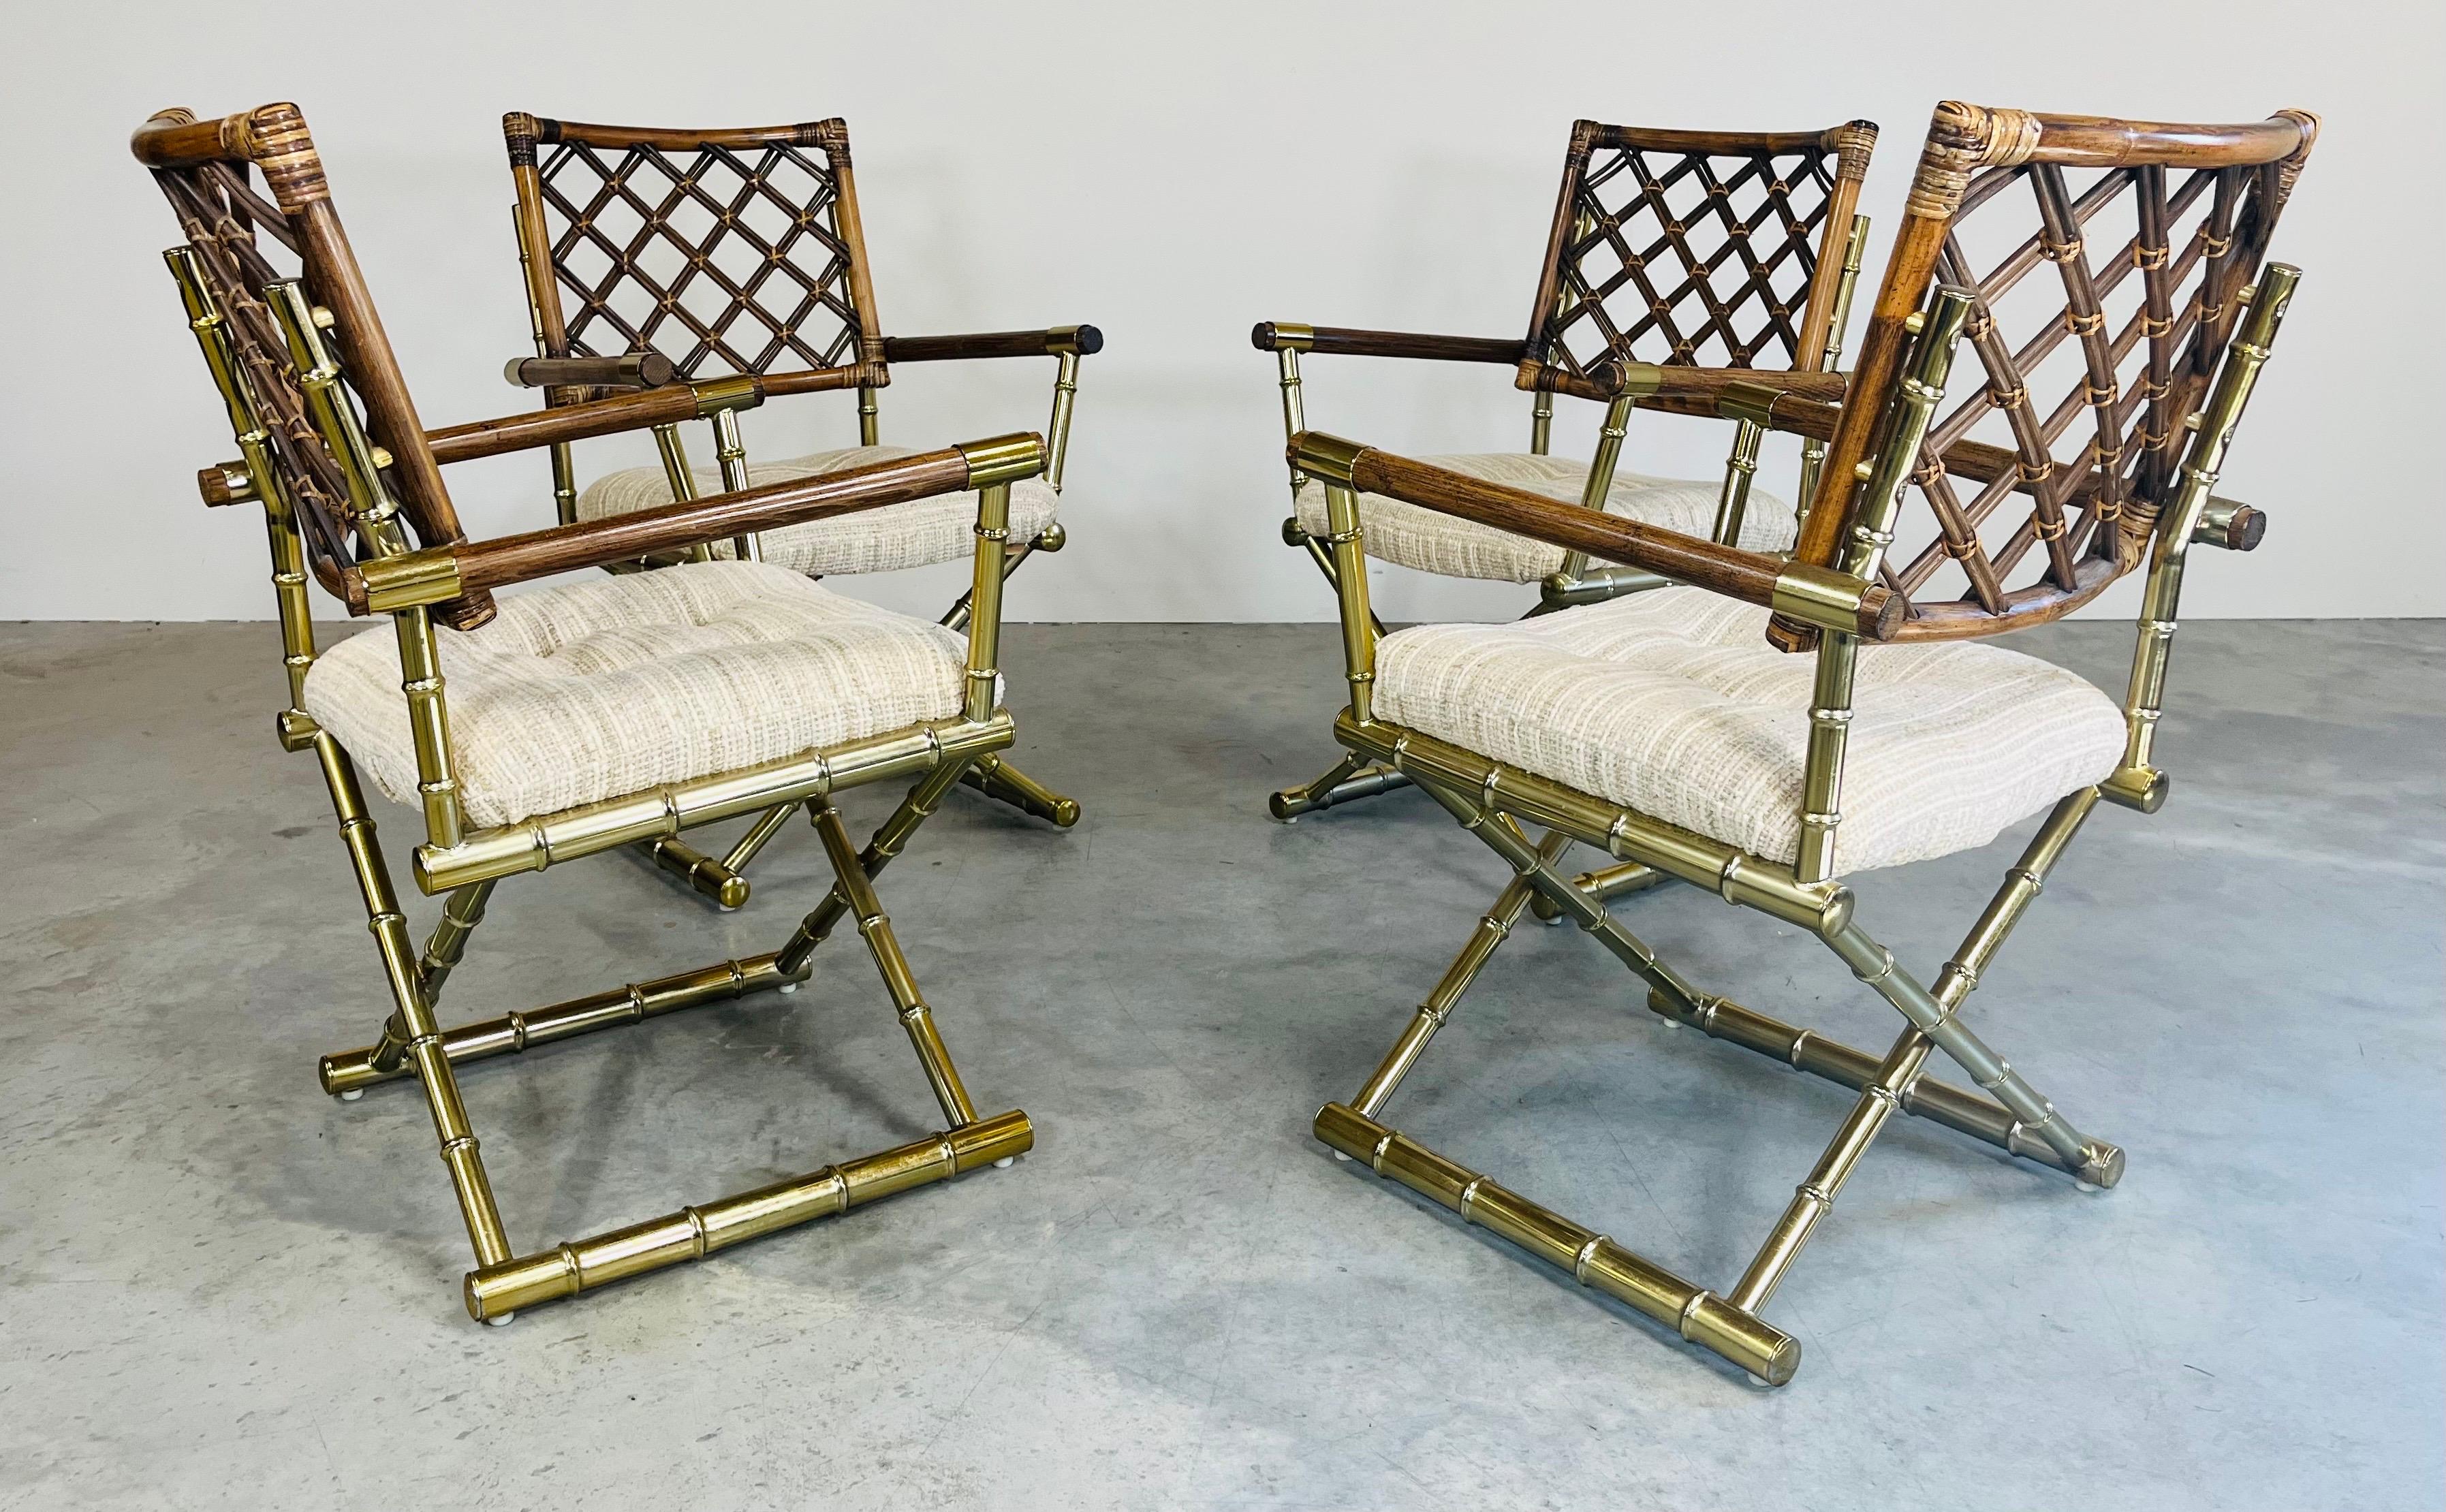 Un ensemble de 4 fauteuils Hollywood Regency avec des bases en X en faux bambou et laiton, des dossiers en treillis de bambou enveloppés de canne et des sièges à coussin souple en tweed neutre par Daystrom circa 1985. Très attrayant et confortable.